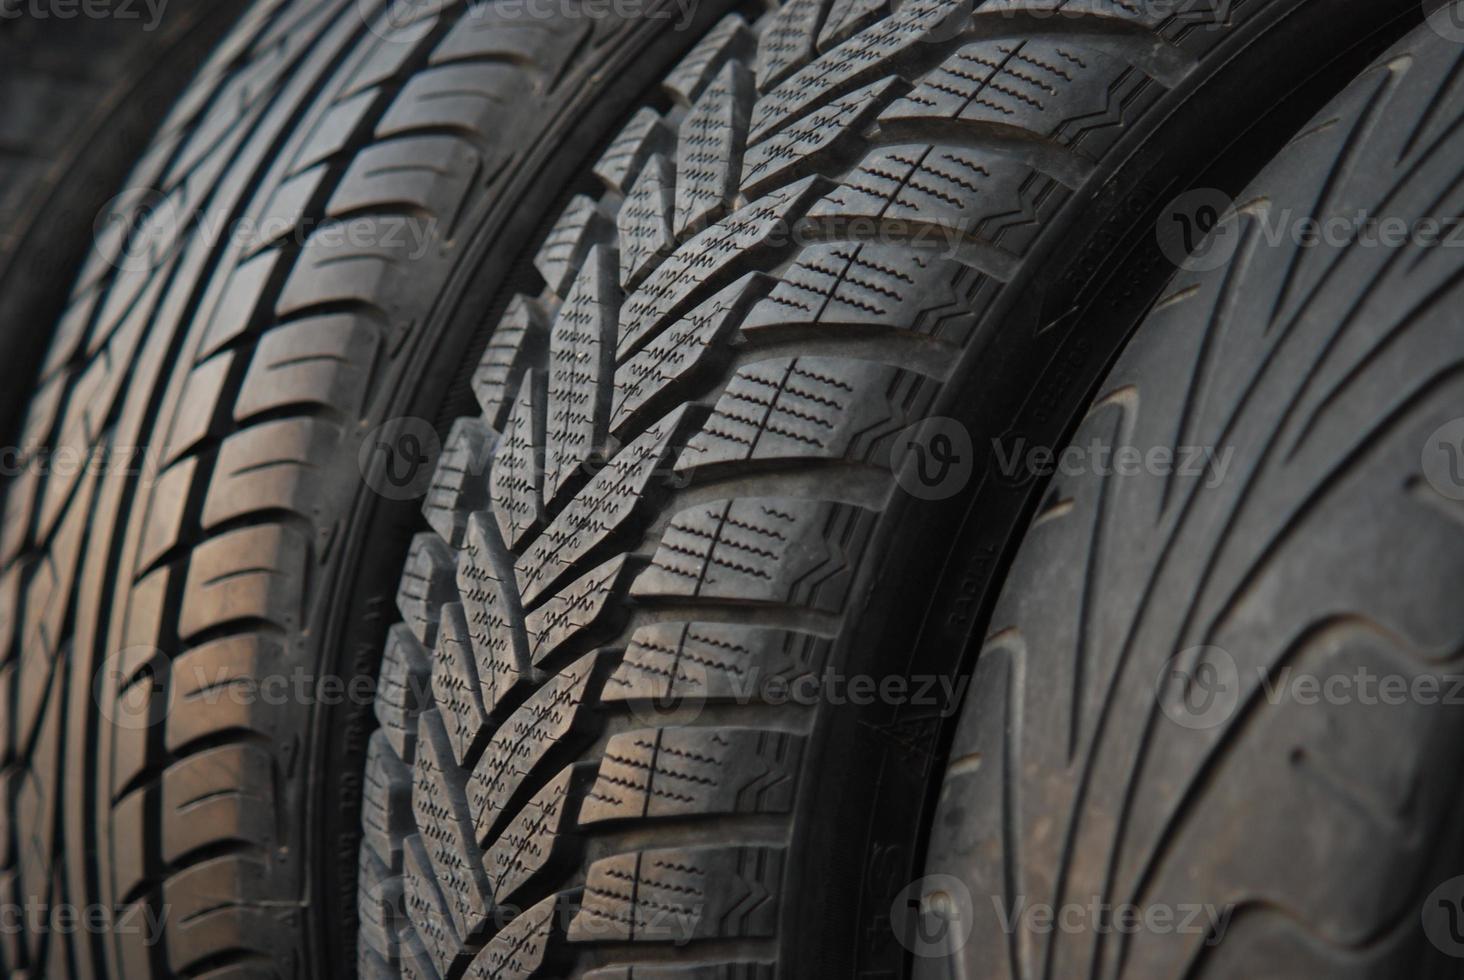 pneus de carros novos e usados foto